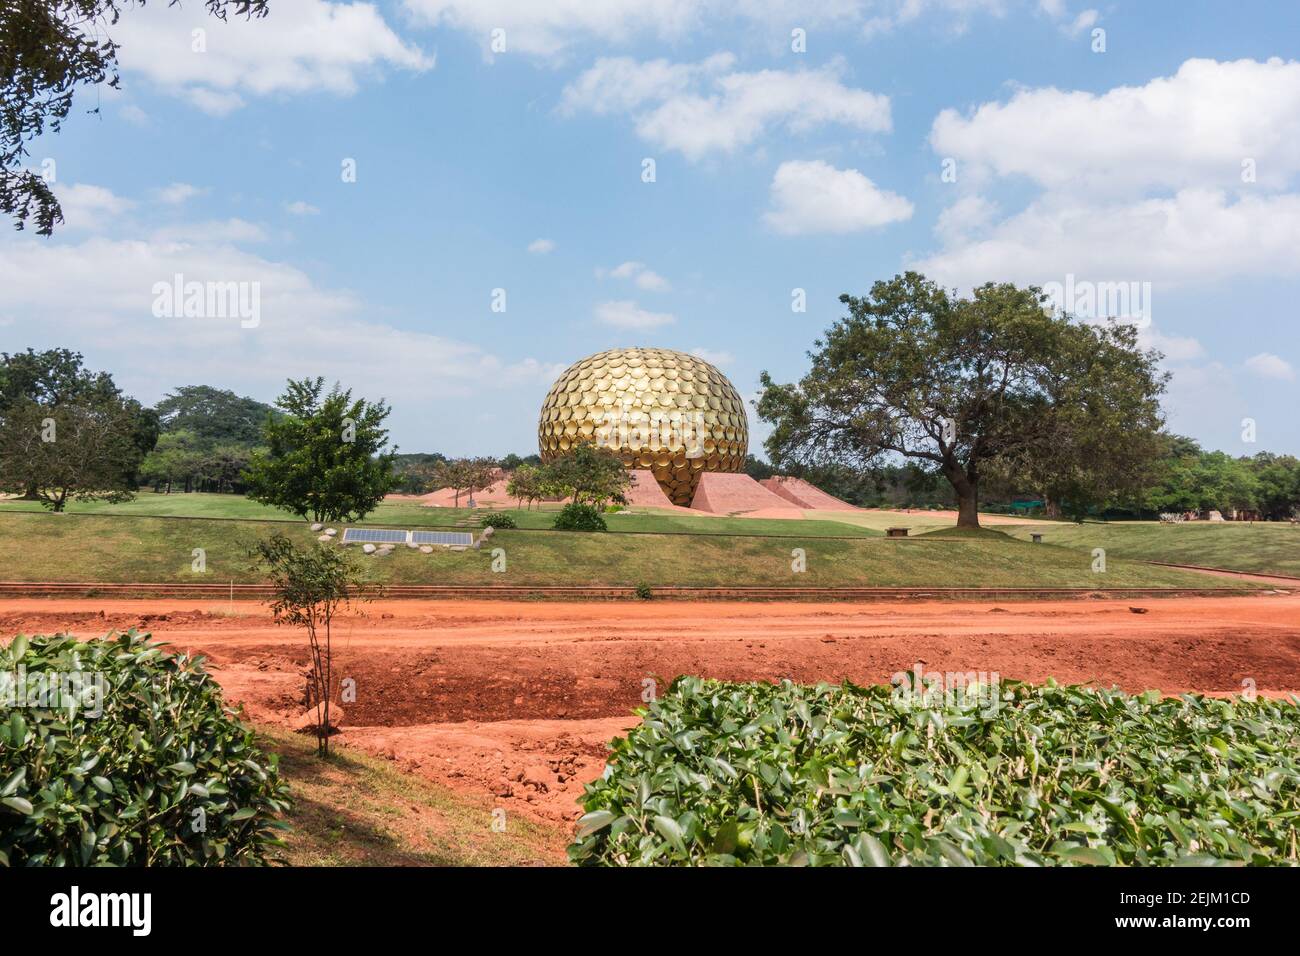 Matrimandir in Auroville established by Mira Alfassa 'The Mother' in Pondicherry or Pudhucherry, Tamil Nadu, India Stock Photo